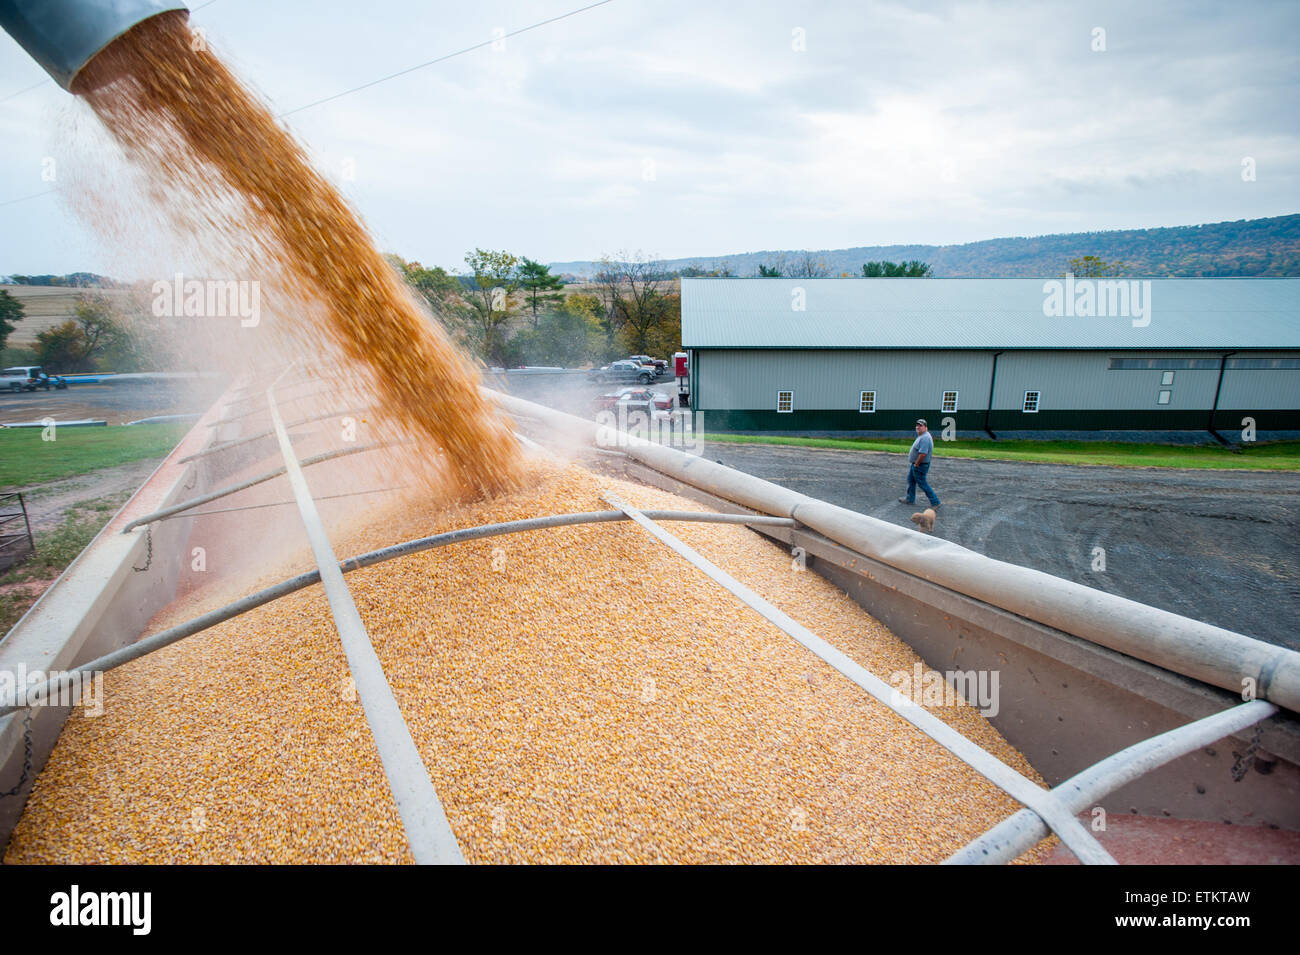 Le maïs au chargement camion à grain après la récolte dans la région de Dalmatie, New York, USA Banque D'Images